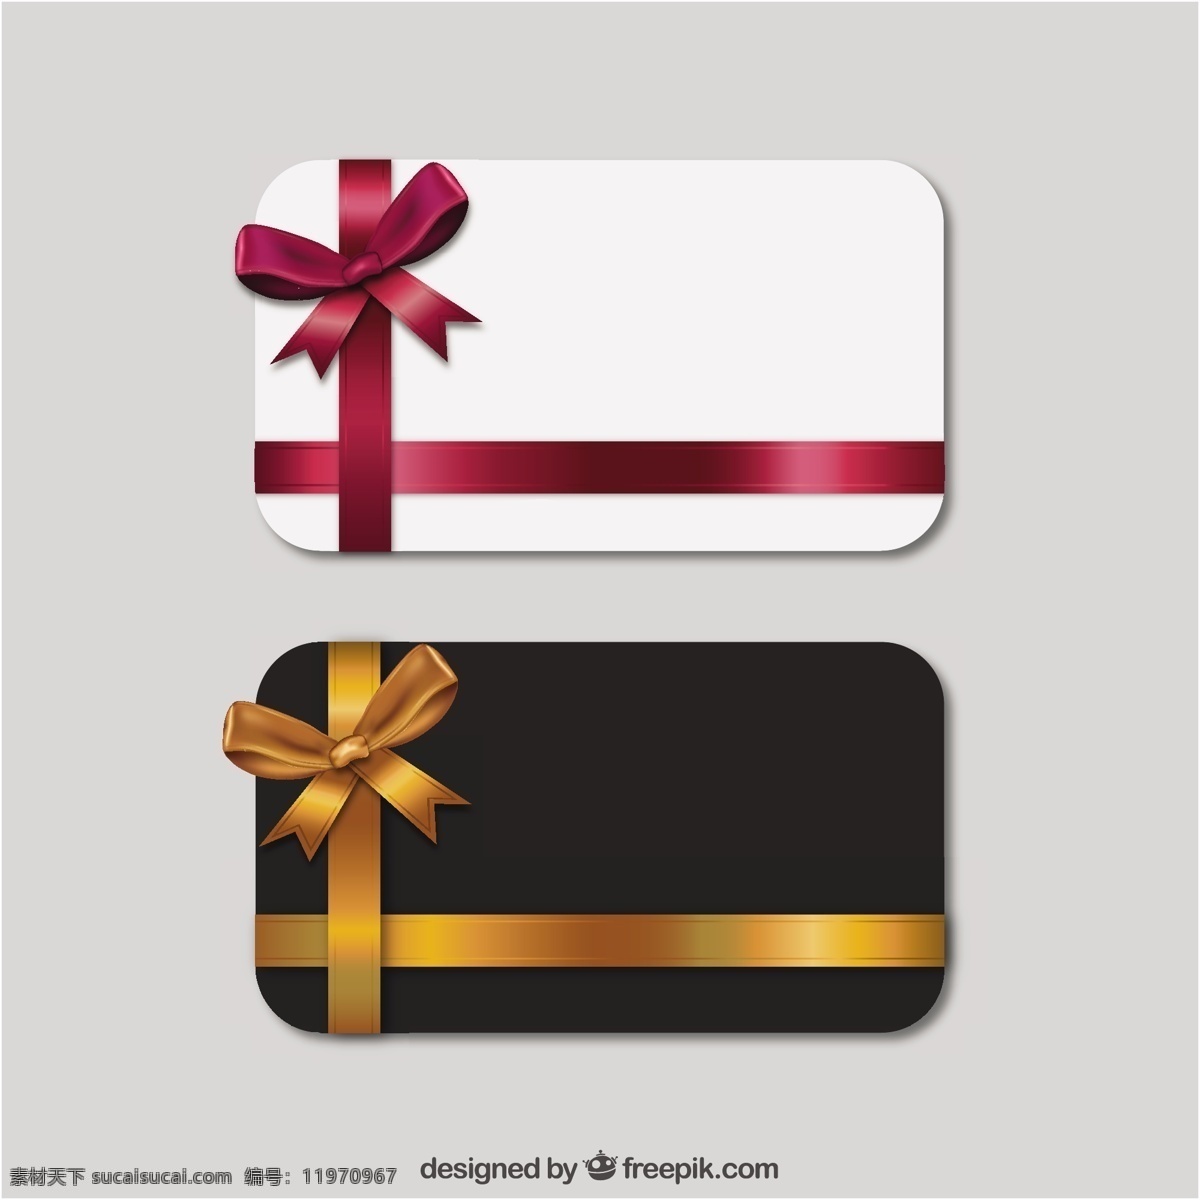 礼品卡模板 横幅 丝带 礼品 购物 商店 目前 卡片 色带 旗帜 蝴蝶结